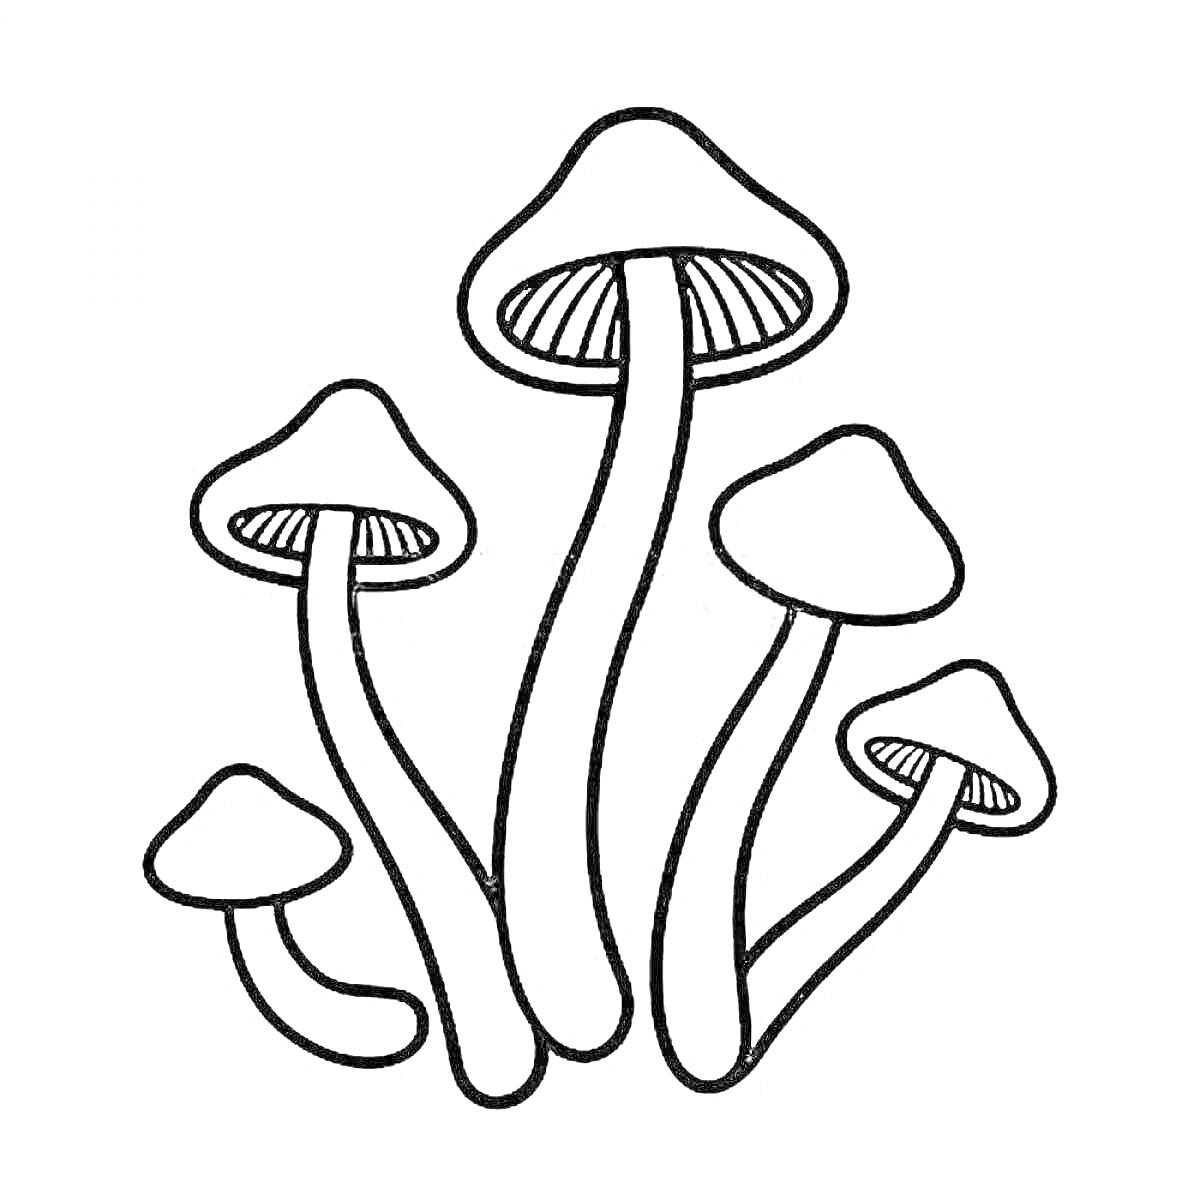 Раскраска Опята - пять грибов с длинными ножками и шляпками